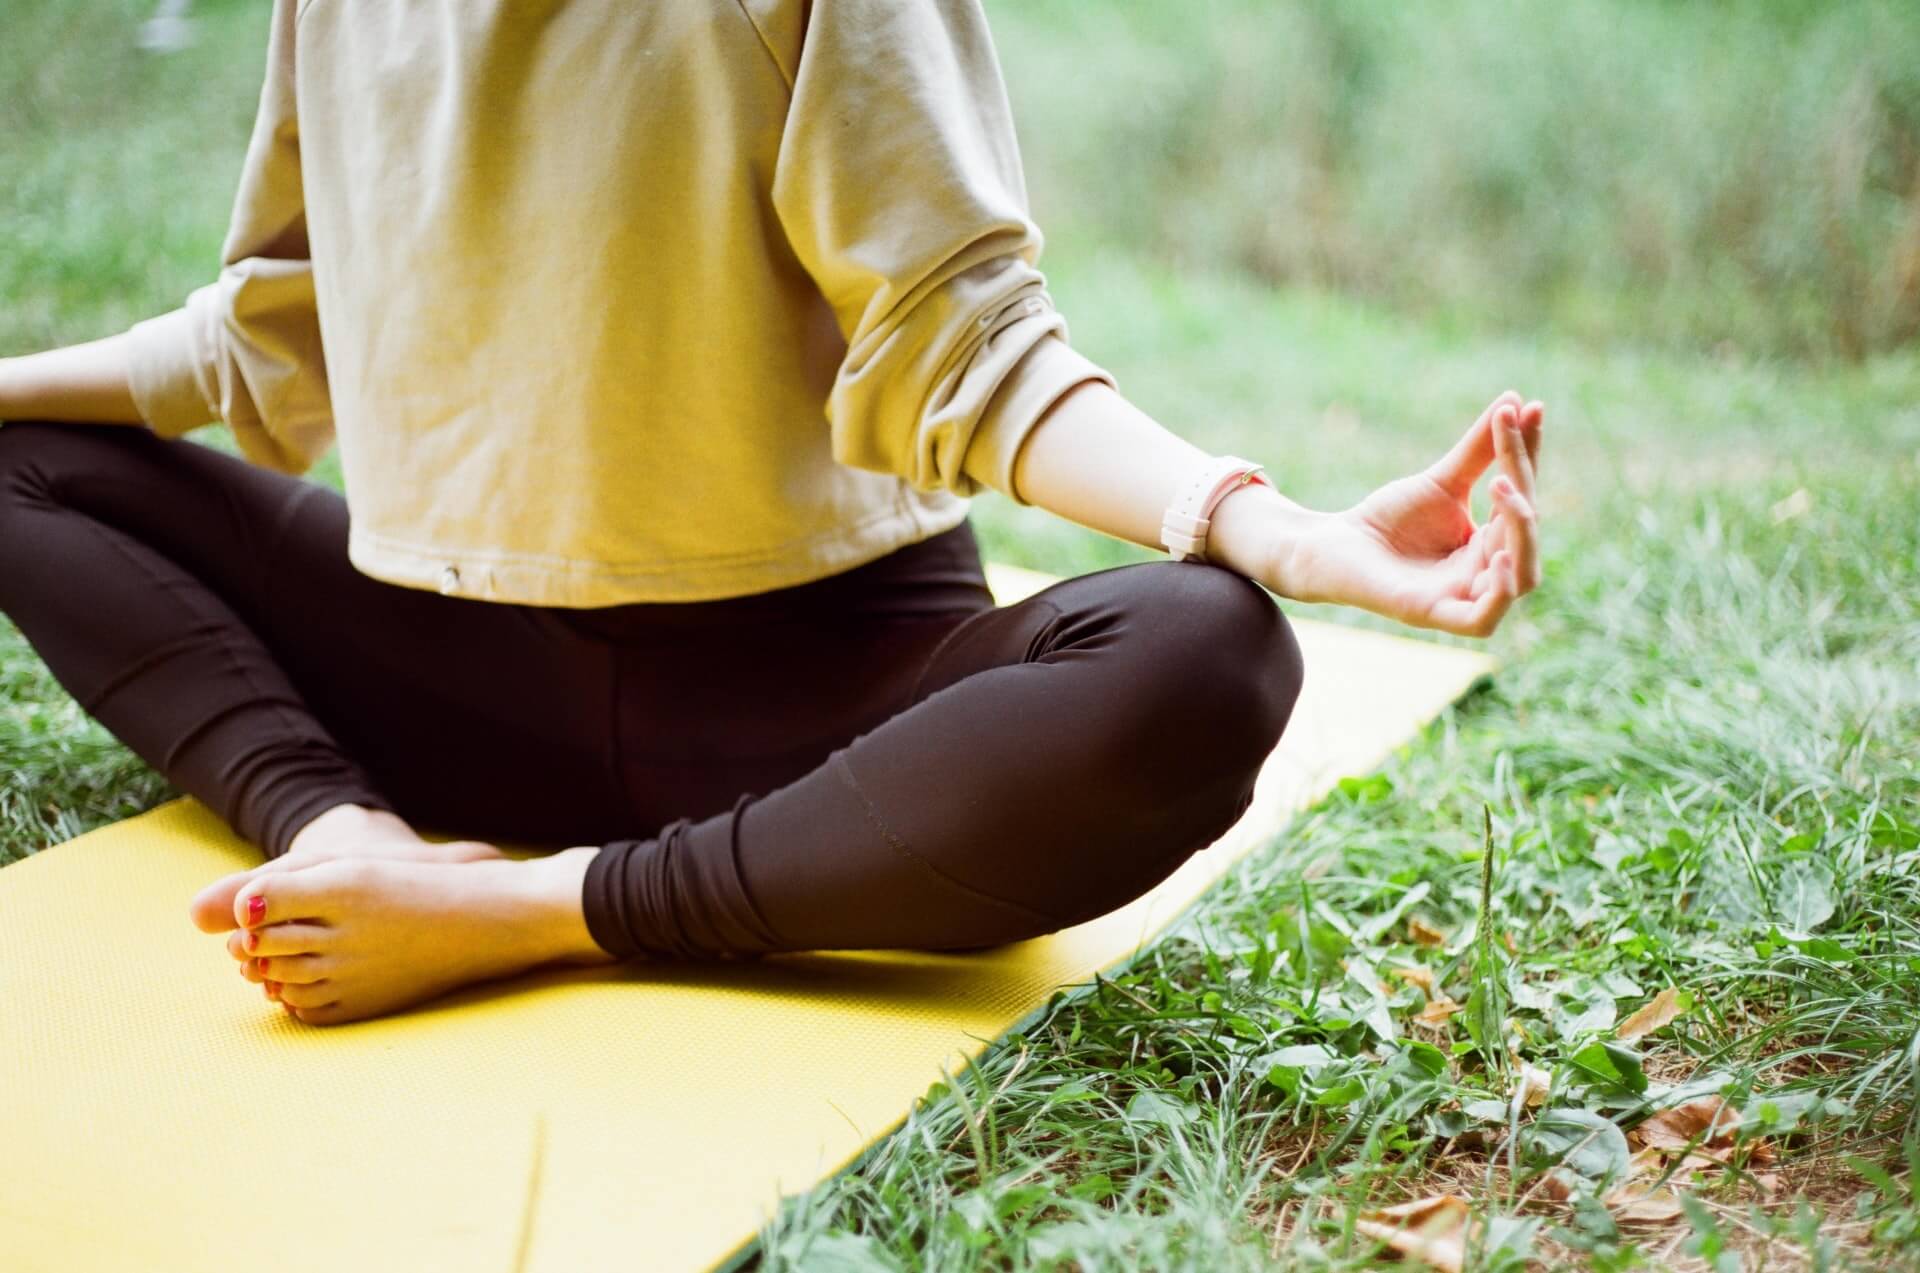 Hier erfahren Sie, welche Yogamatten sich für draußen eignen. Außerdem zeigen wir Ihnen die 3 wichtigsten Tipps.